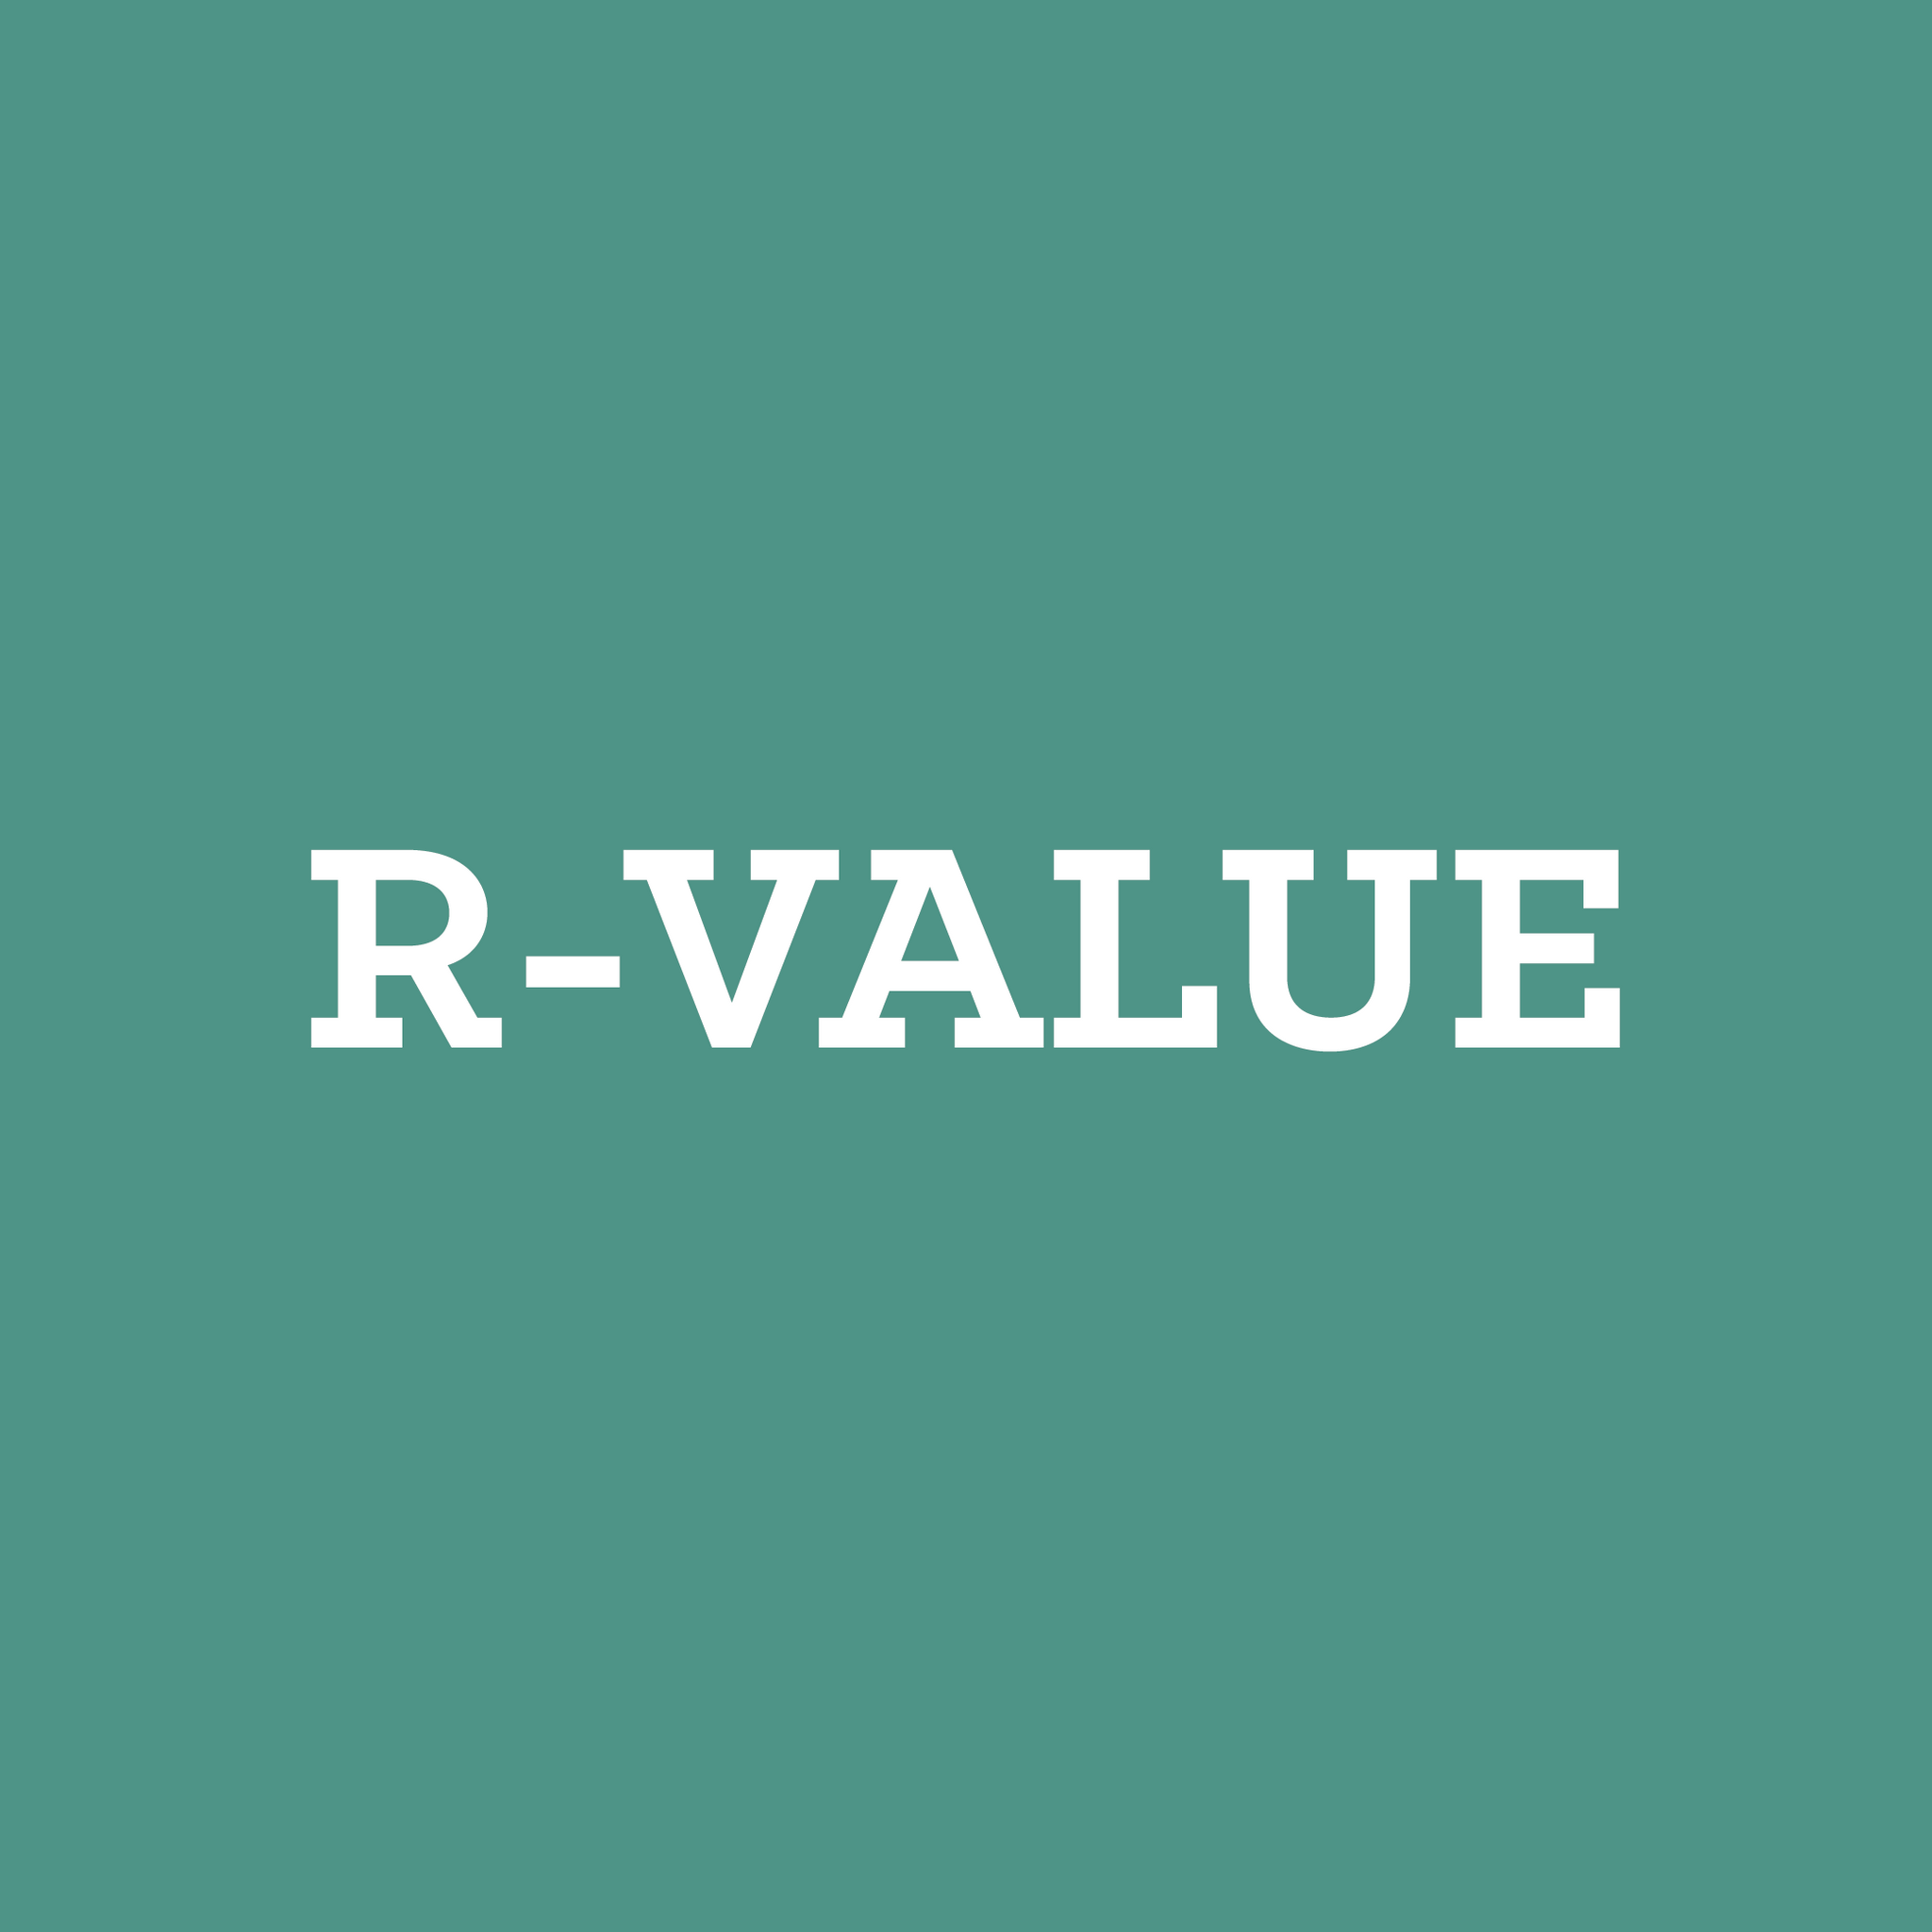 Was ist der R-Wert und wie wird er gemessen?